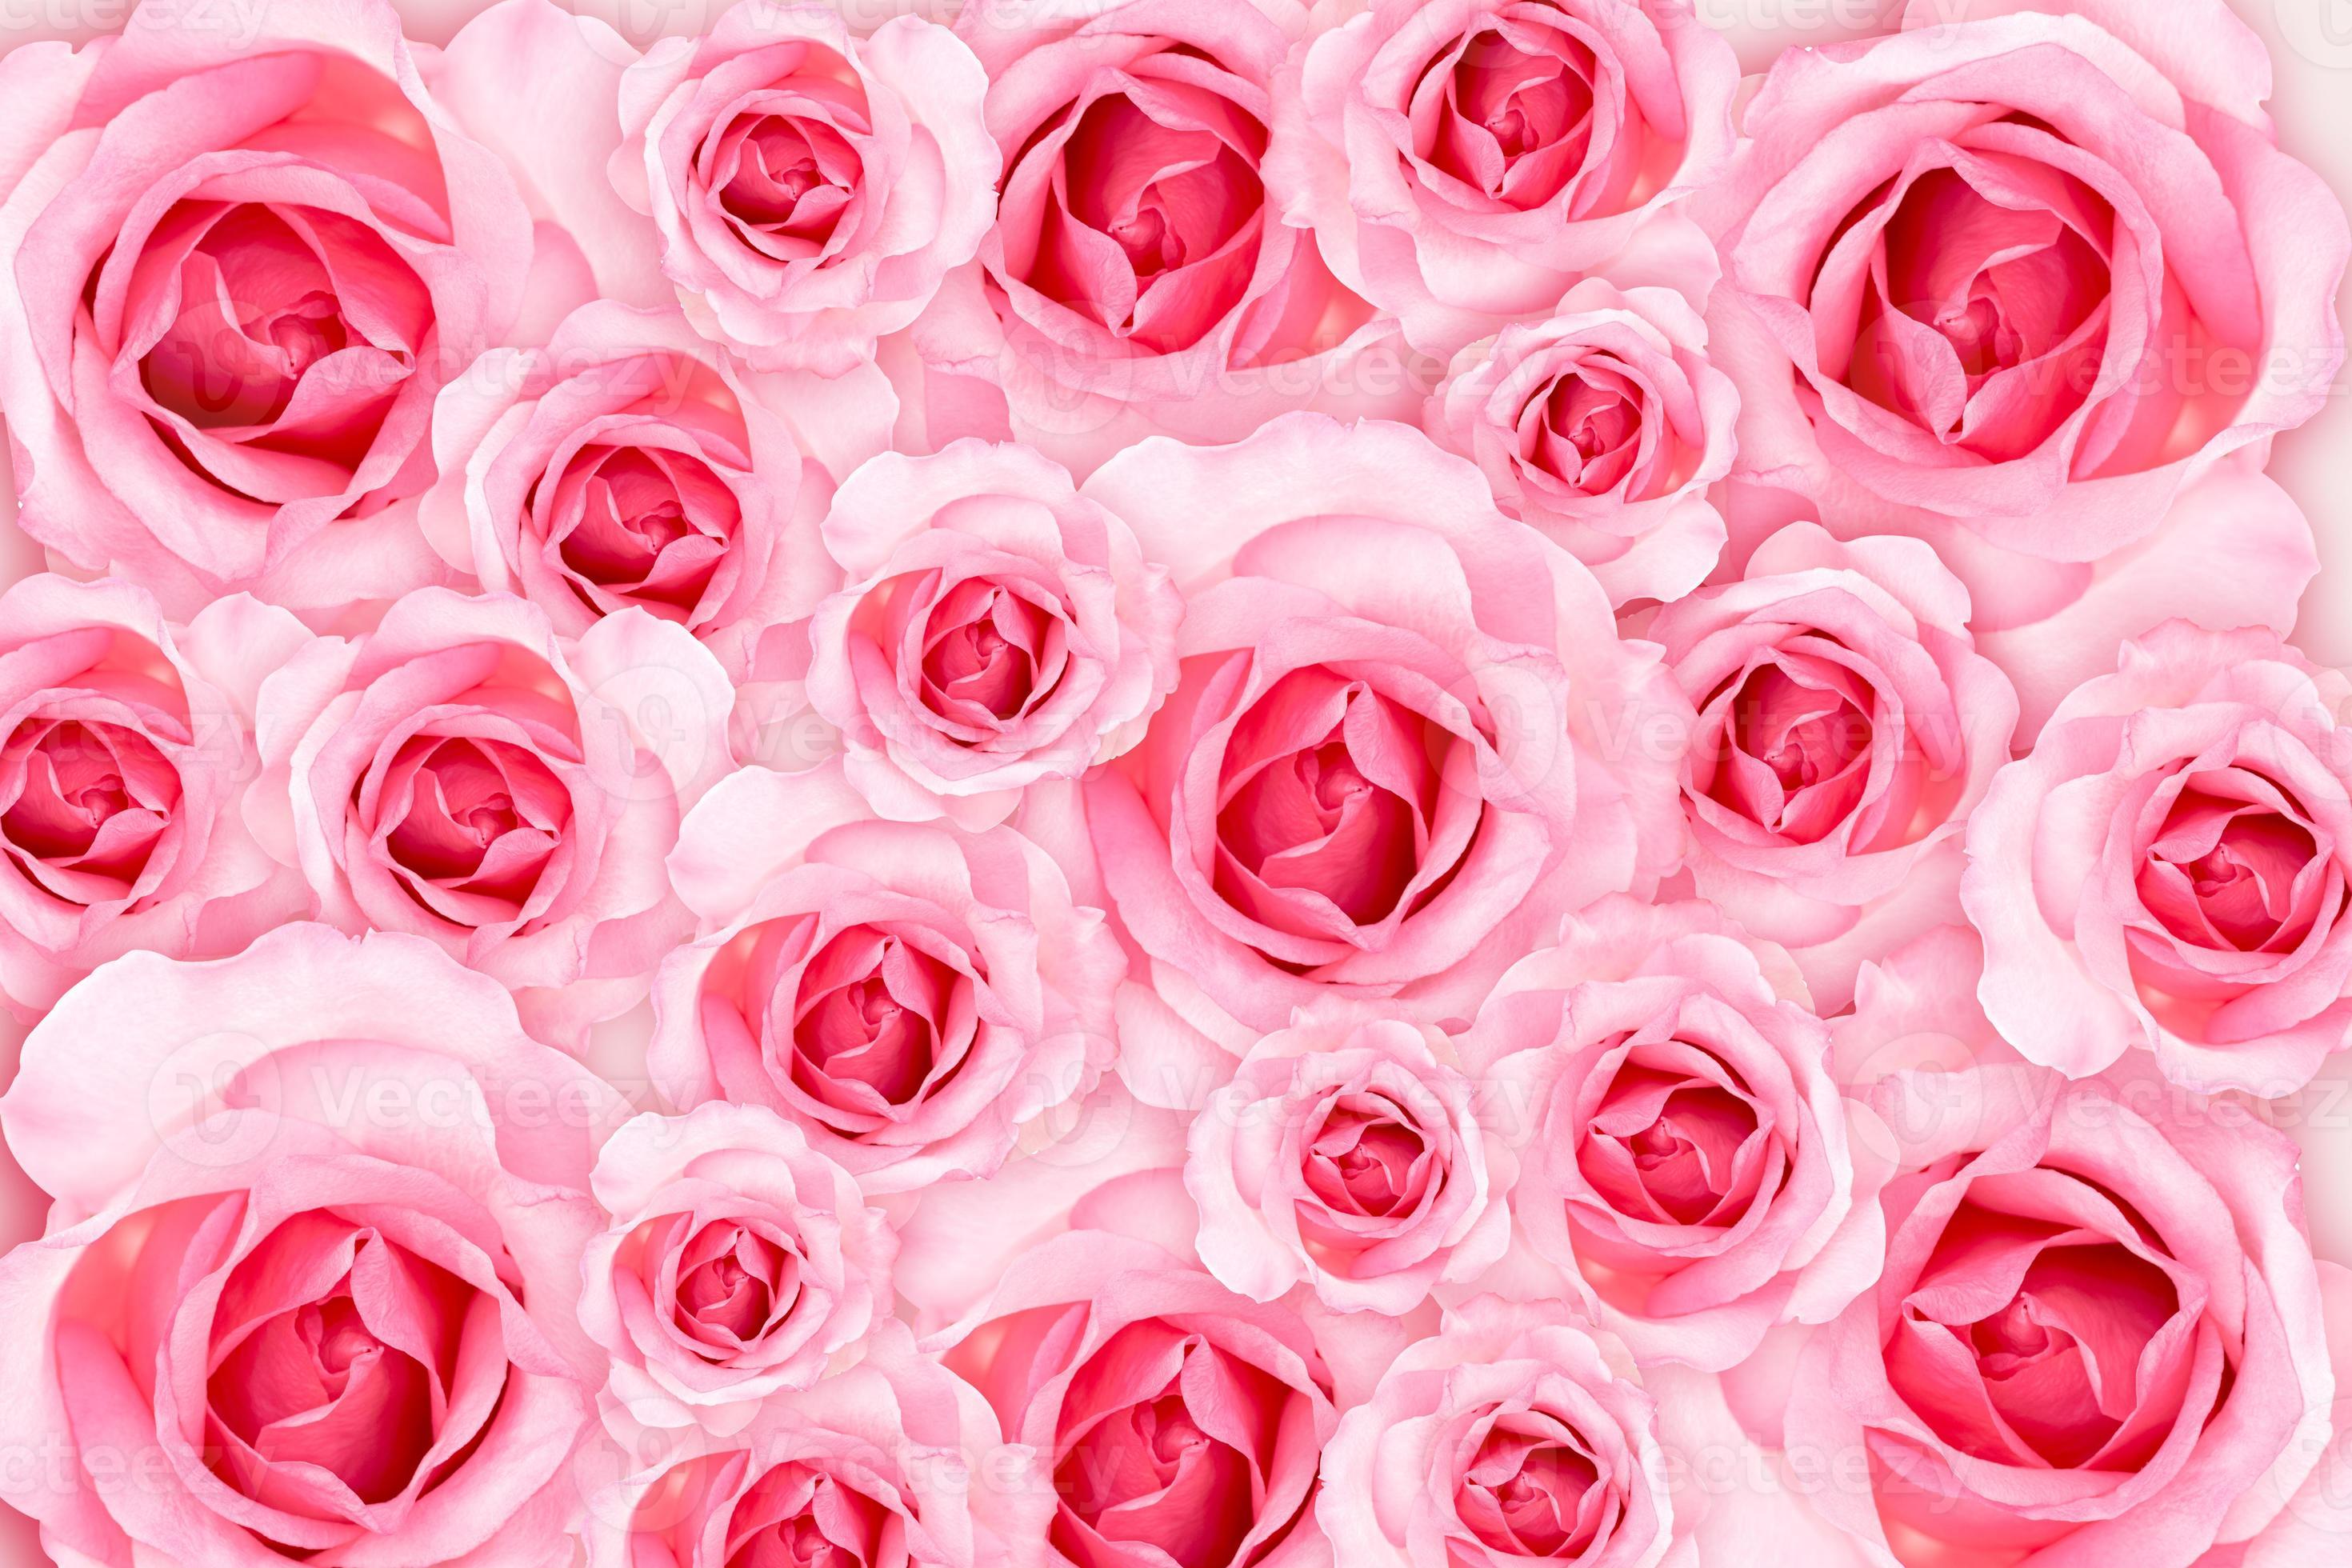 Nền hoa hồng hồng mới mẻ: Nền hoa hồng hồng mới mẻ sẽ làm cho bất kỳ ai cũng phải chú ý đến nó. Những bông hoa hồng tươi đầy màu sắc được sắp xếp một cách tinh tế và độc đáo, tạo nên một sức hút đặc biệt không thể bỏ qua. Thưởng thức bức ảnh này để tràn đầy niềm vui và sự thoải mái.